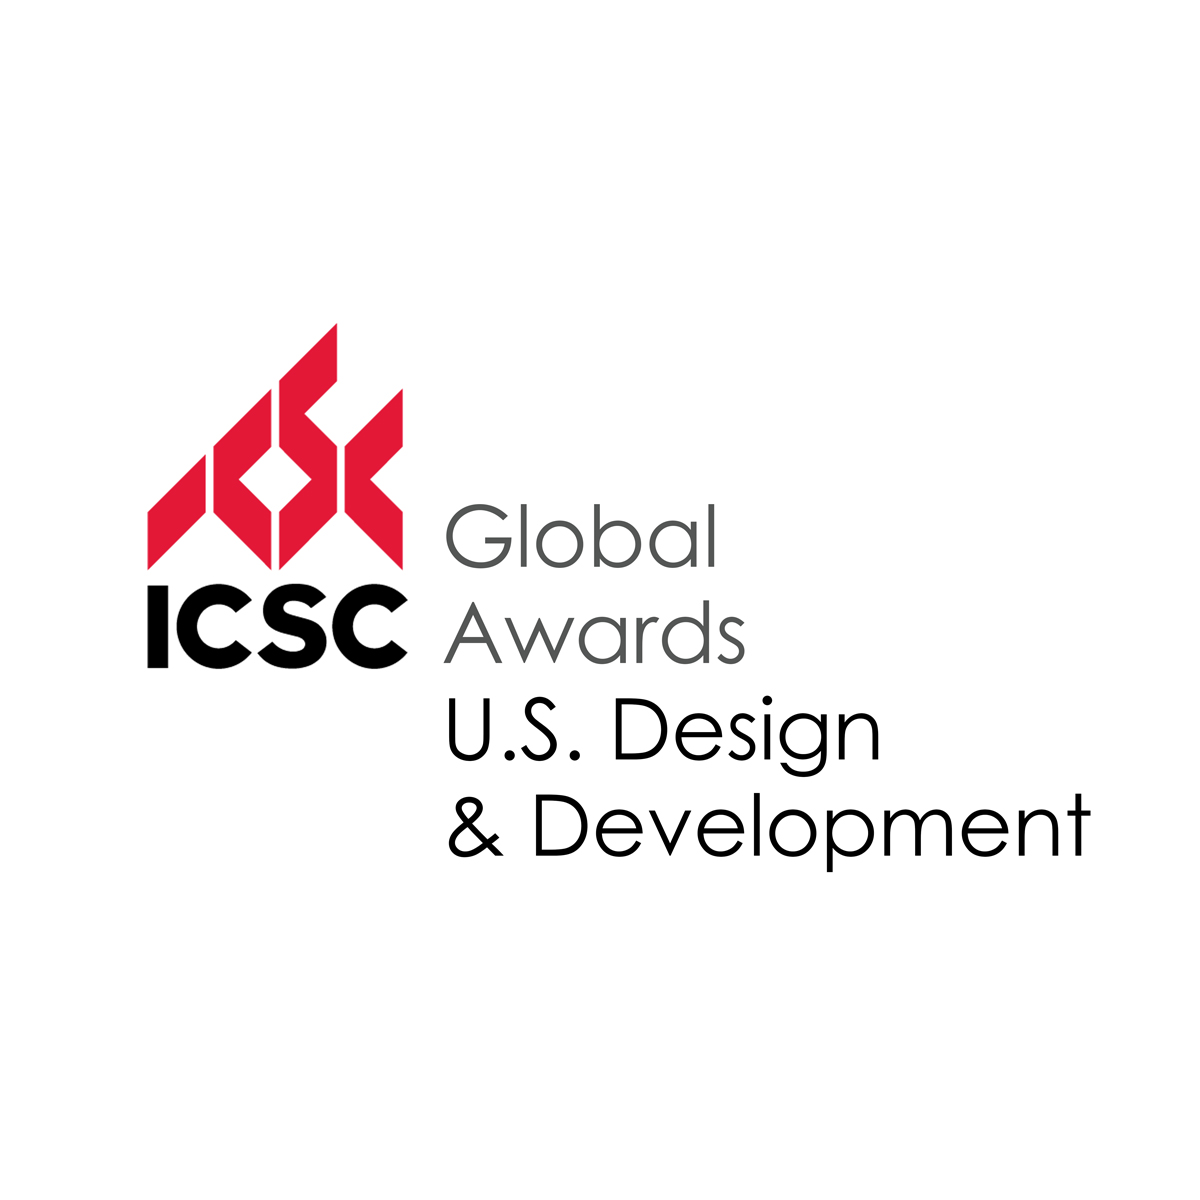 ICSC Global Awards Logo